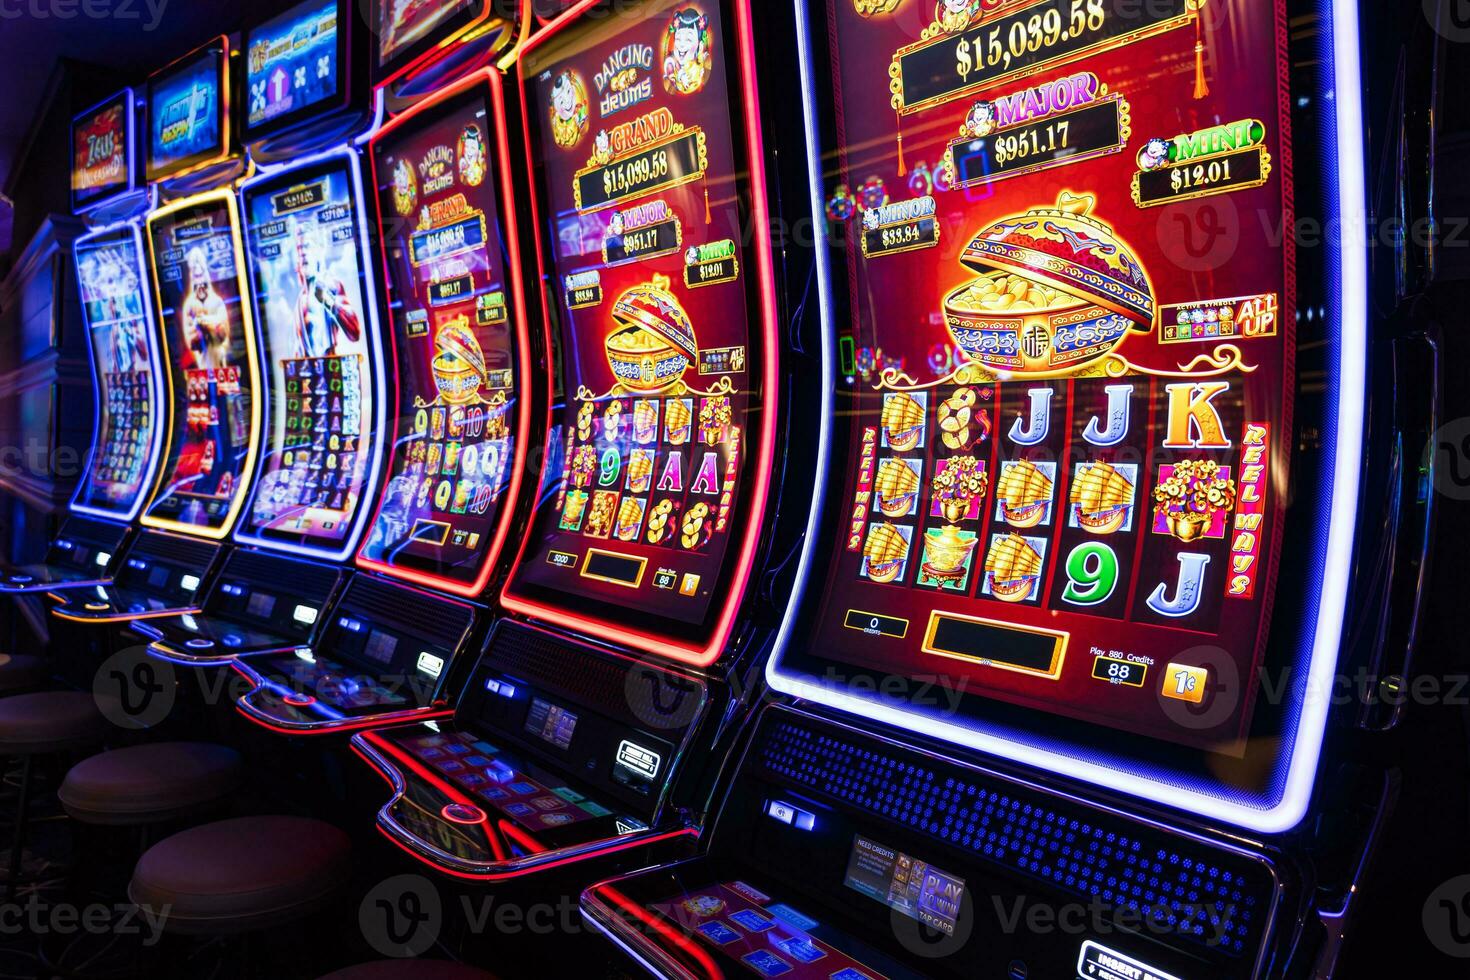 cassino jogos de azar blackjack e ranhura máquinas esperando para jogadores e turista para gastar dinheiro foto